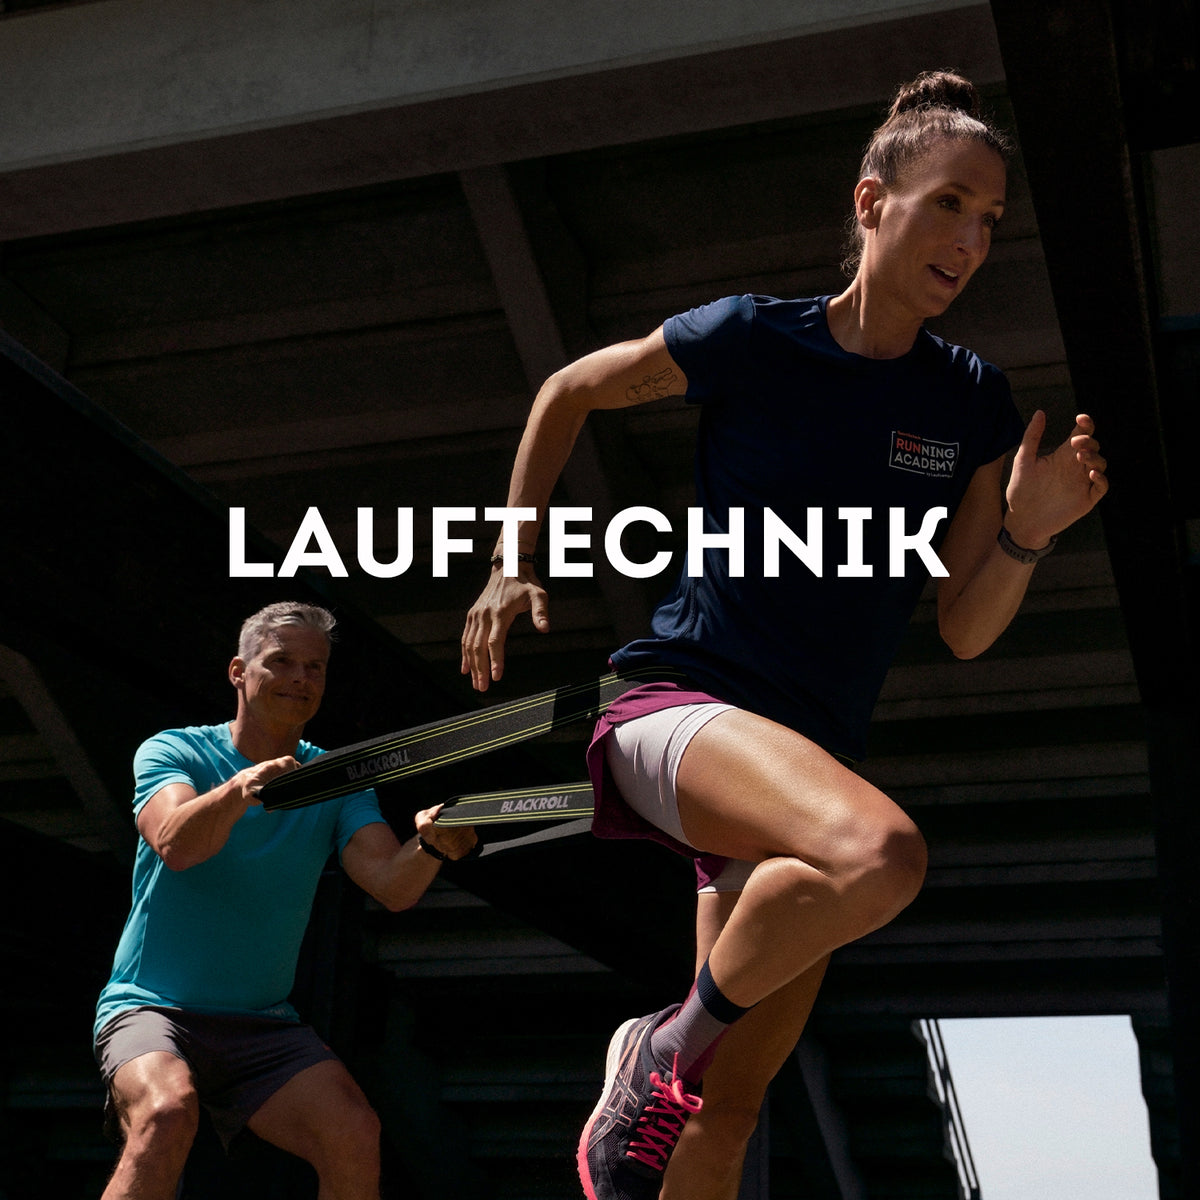 Lauftechnik & Athletik – Laufkurs in Köln1